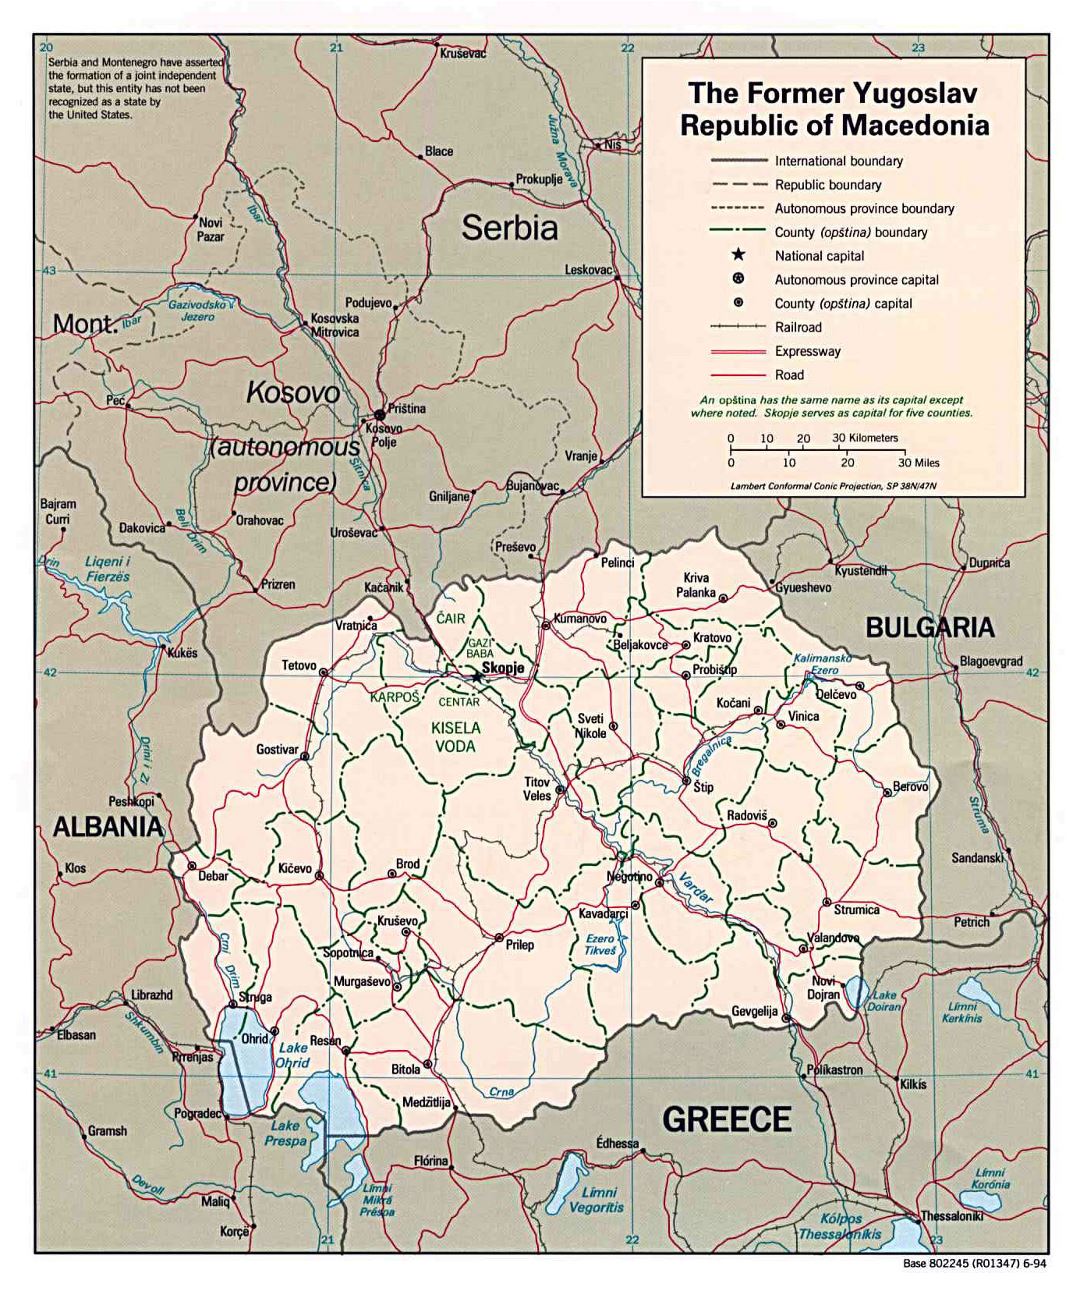 Grande mapa político y administrativo de Macedonia con carreteras y principales ciudades - 1994